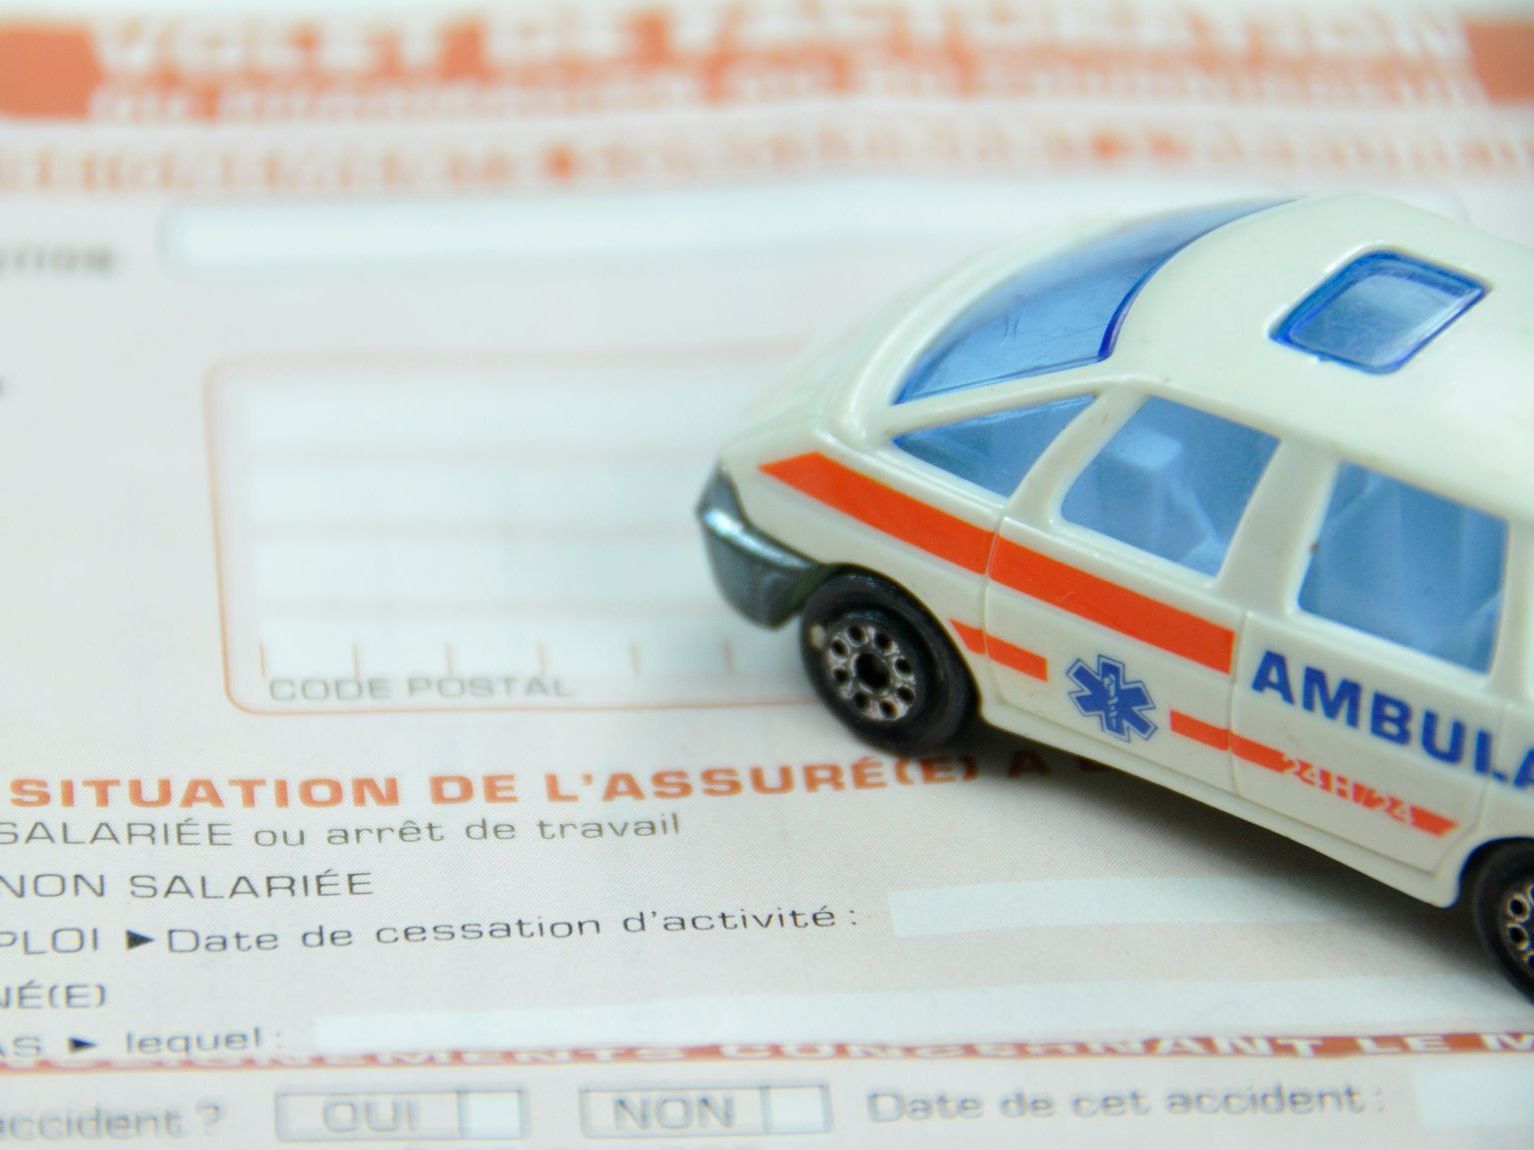 Figurine d'ambulance posée sur un papier de la CPAM